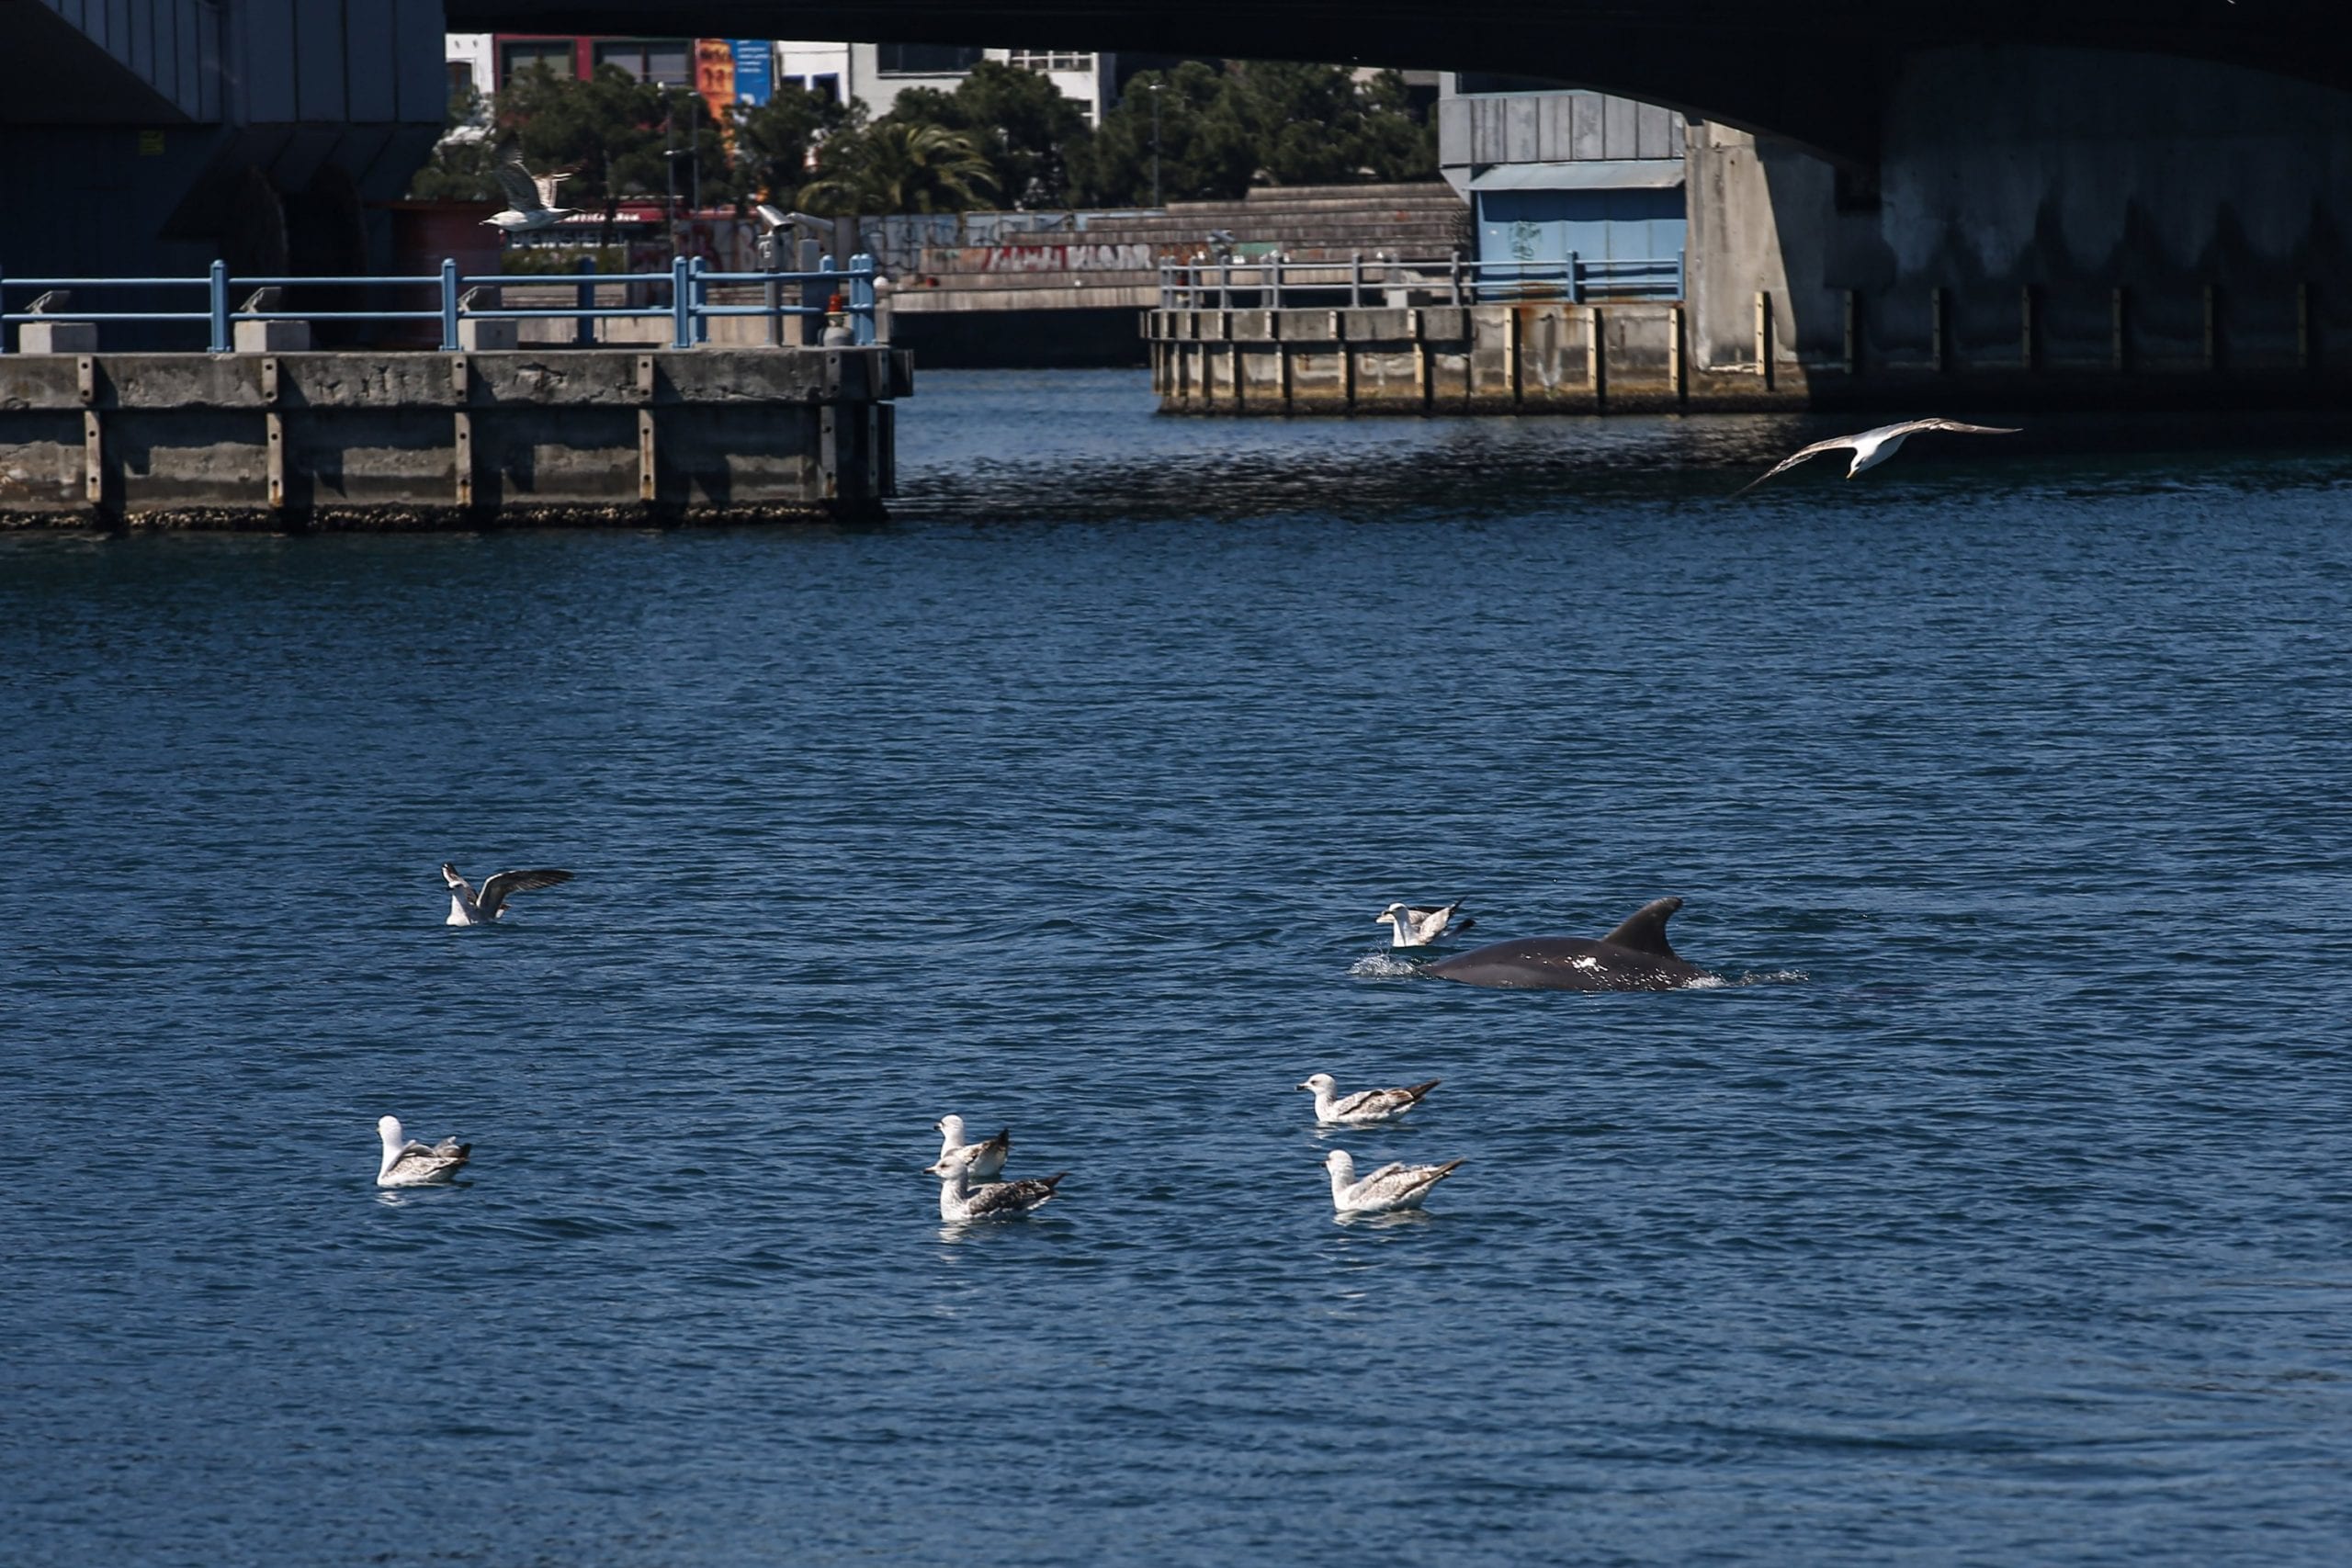 Около Галатского моста в Стамбуле были замечены дельфины